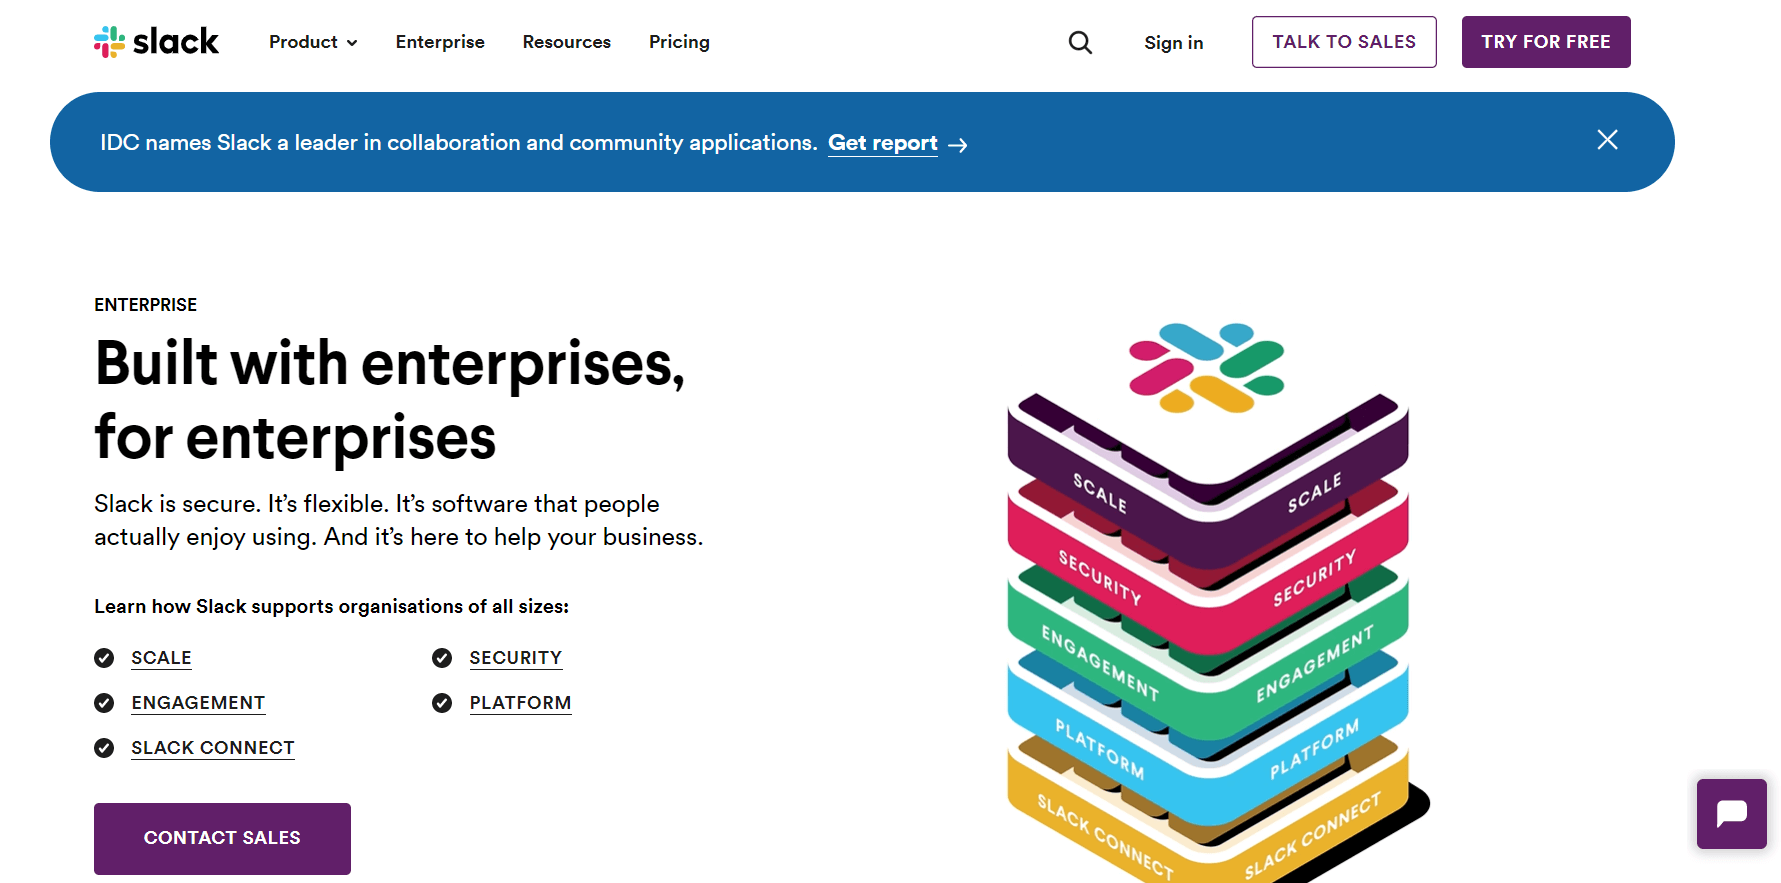 Slack's landing page for enterprise customers